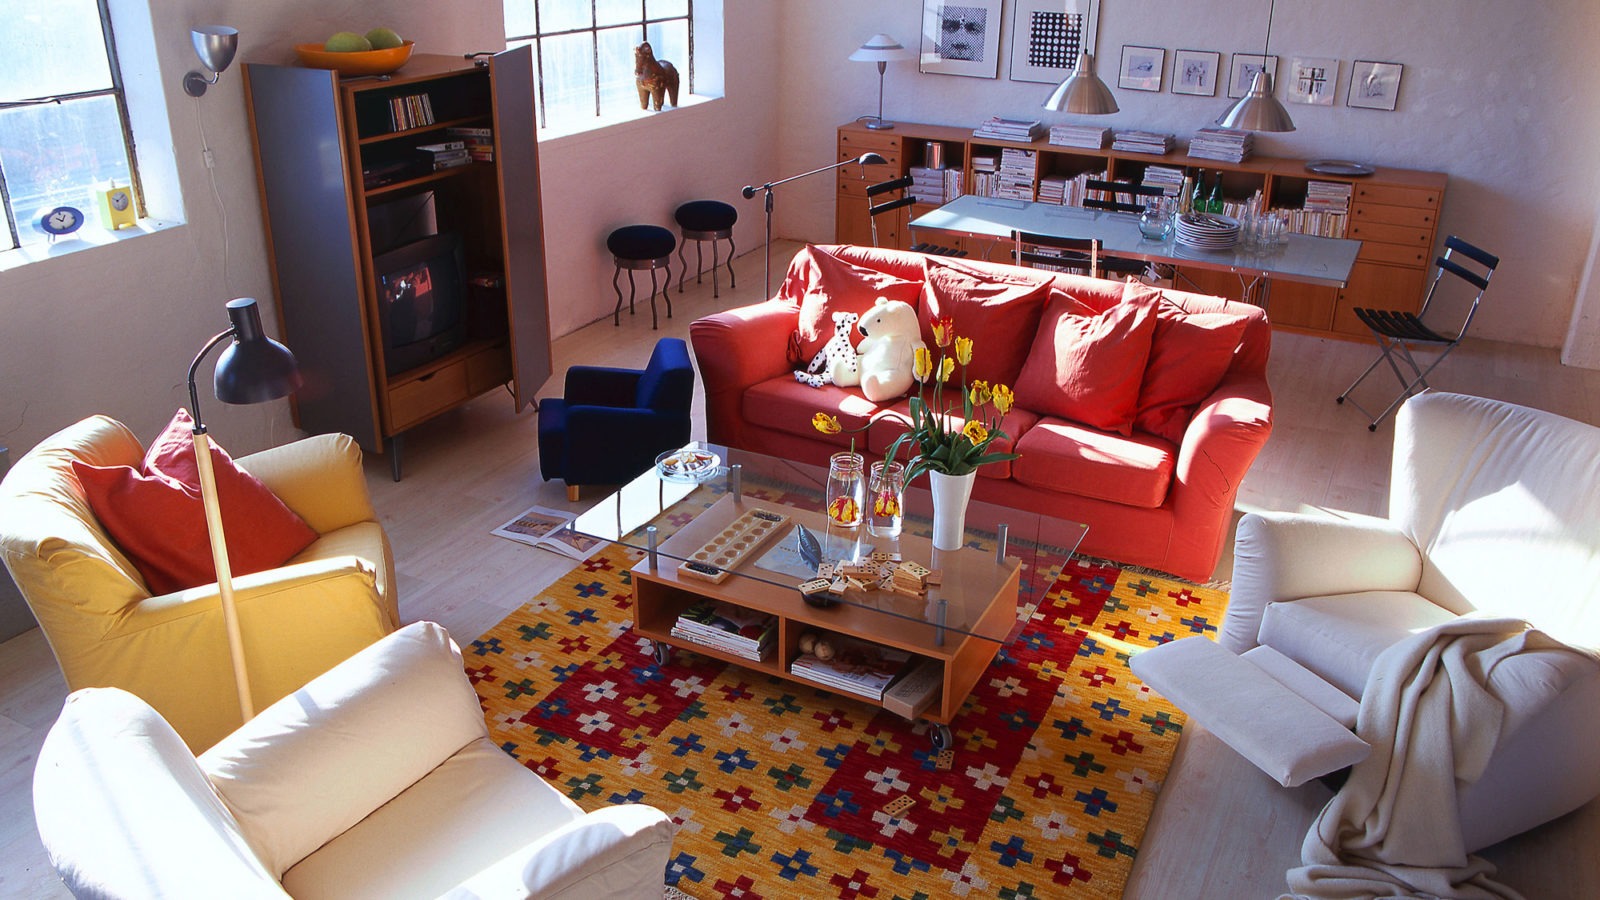 Grand salon avec canapés et fauteuils de couleurs variées autour d’une table basse avec rangement et plateau en verre.